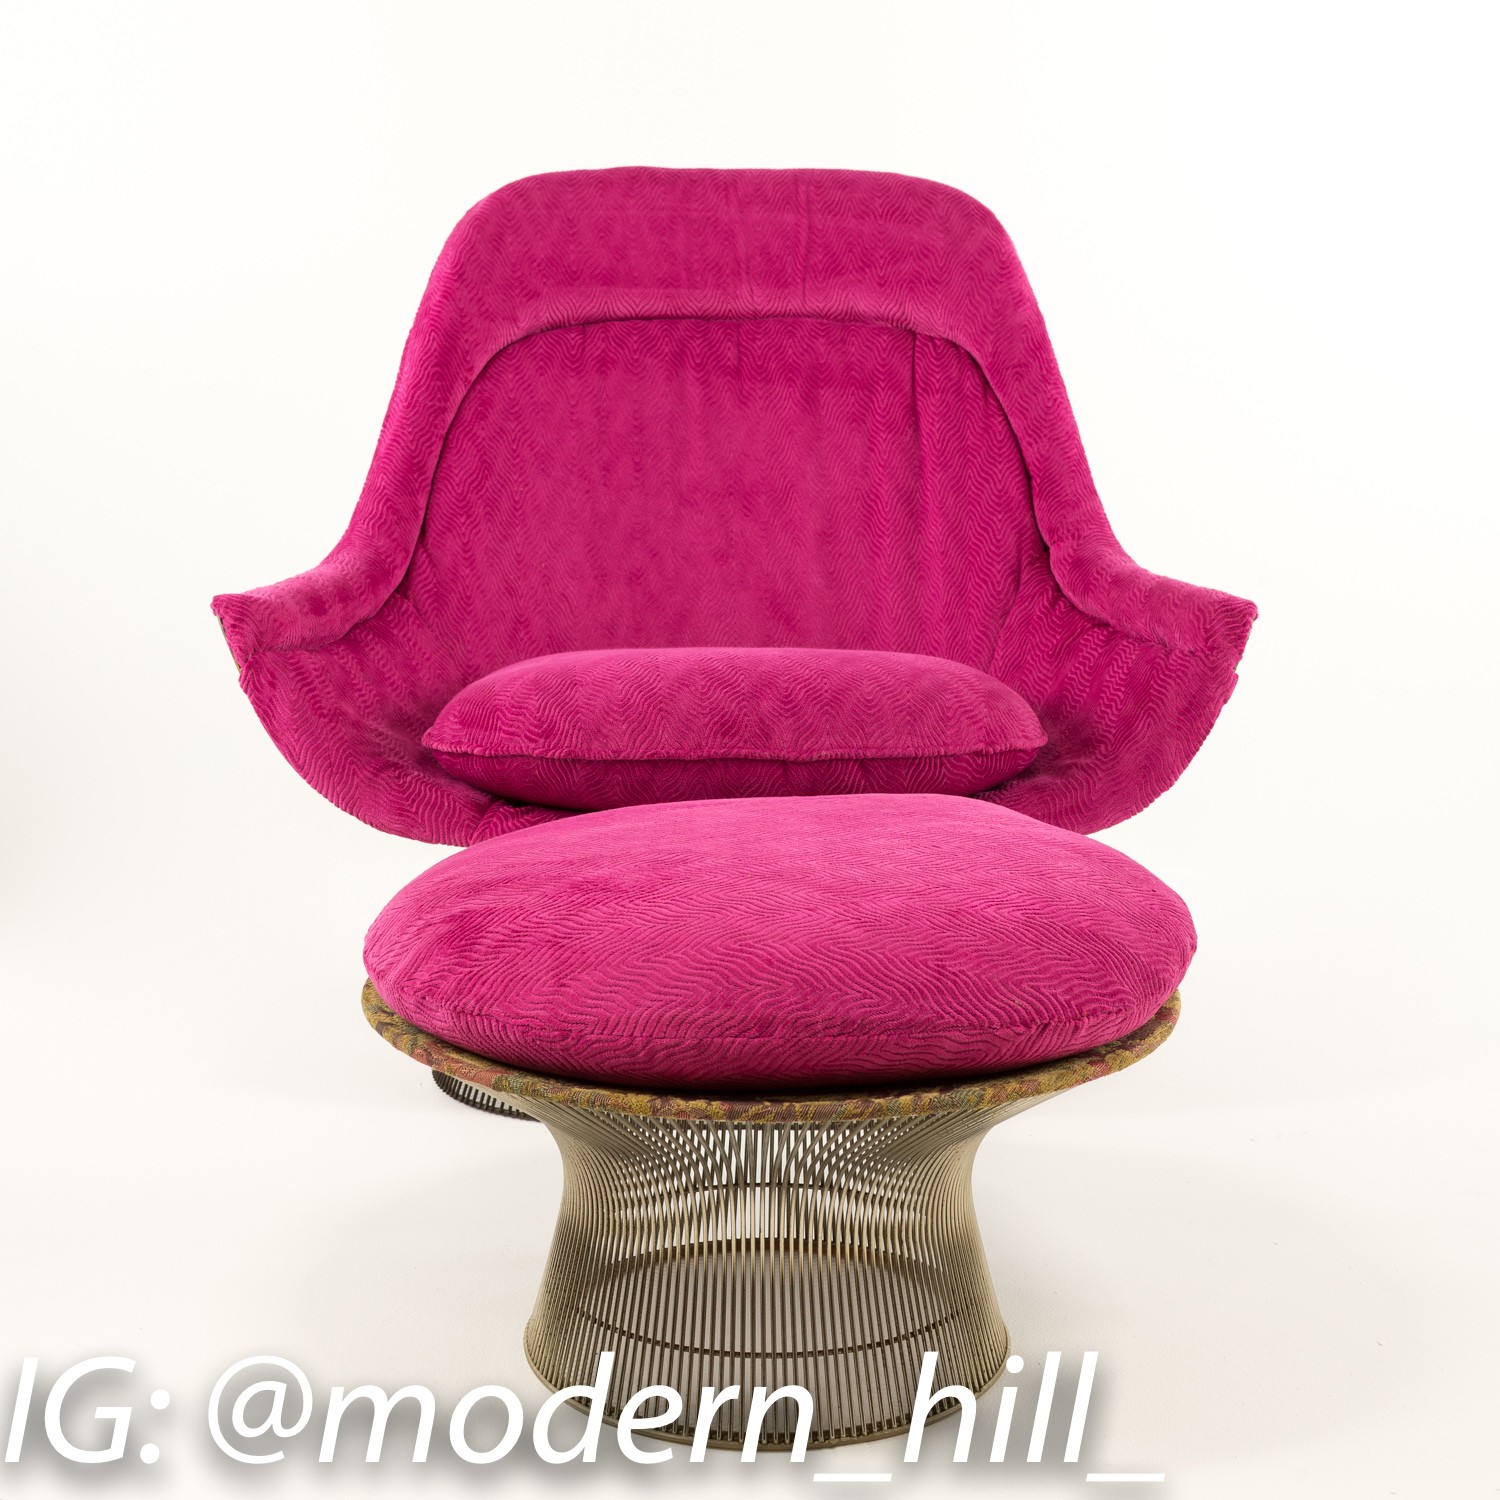 Warren Platner Mid-century Modern Lounge Chair